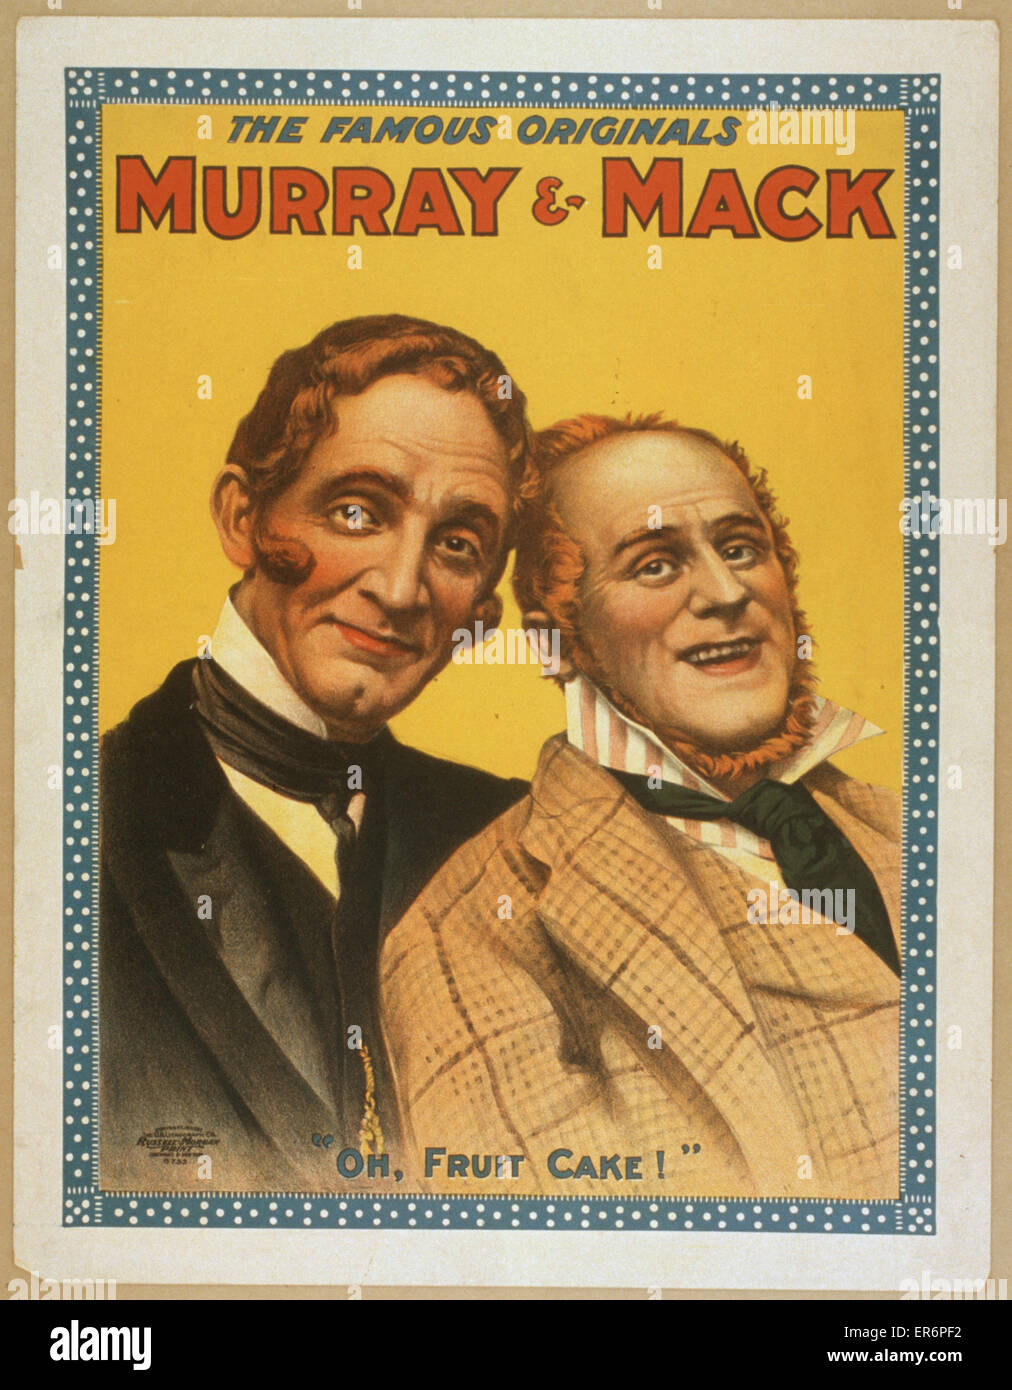 Die berühmten Originale Murray & Mack die berühmten Originale Murr Stockfoto